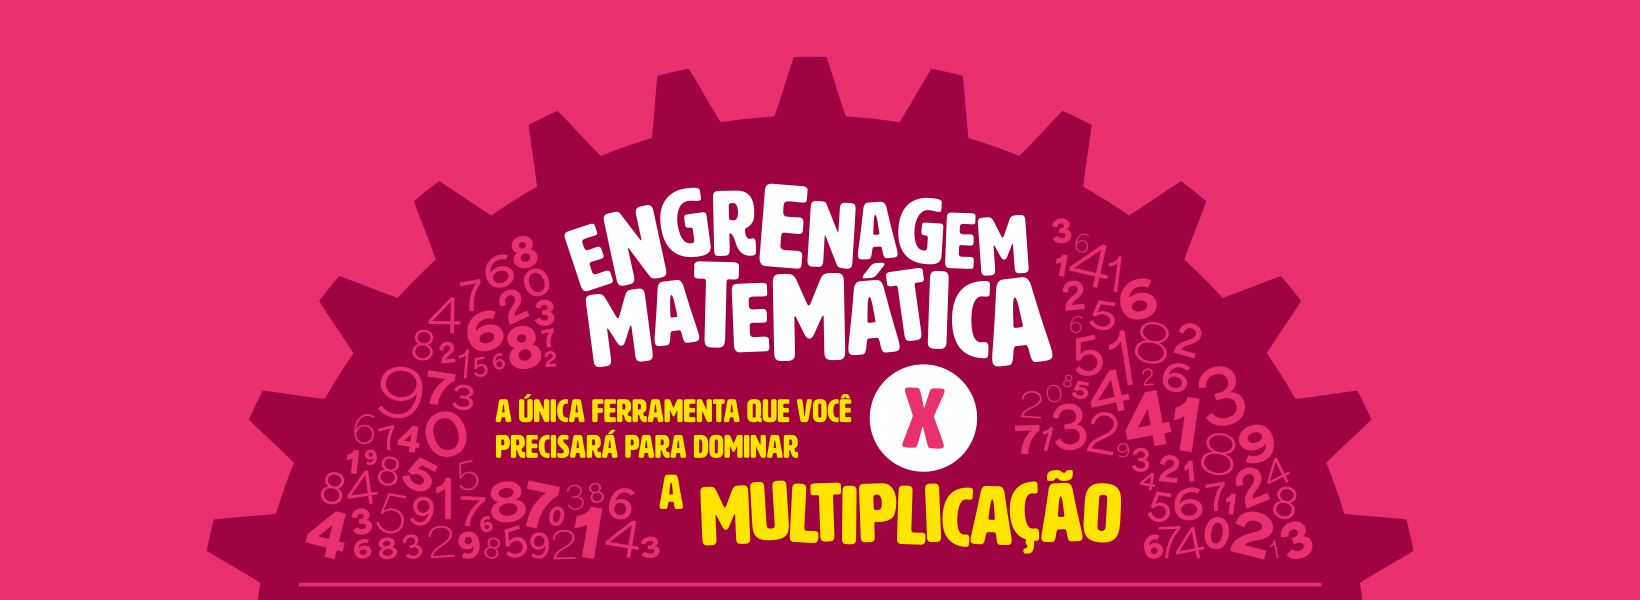 Engrenagem matemática - Multiplicação